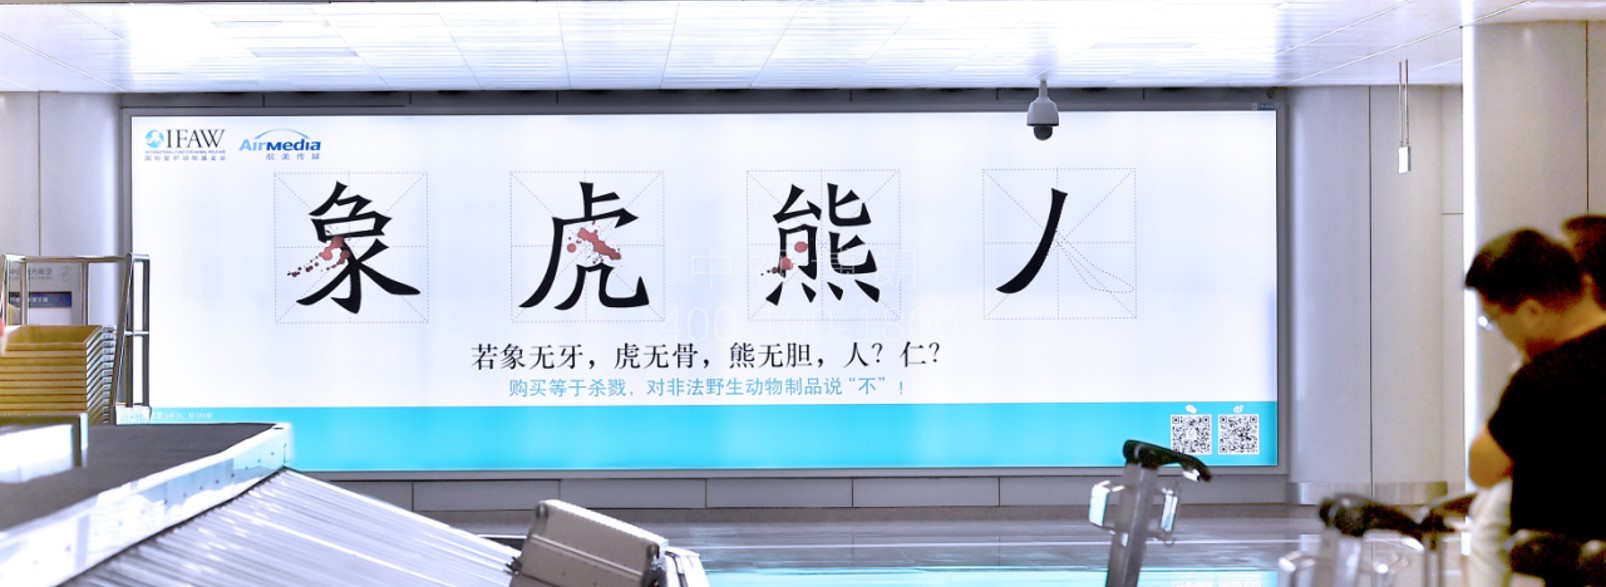 北京首都机场广告-T2国内到达行李厅灯箱2A